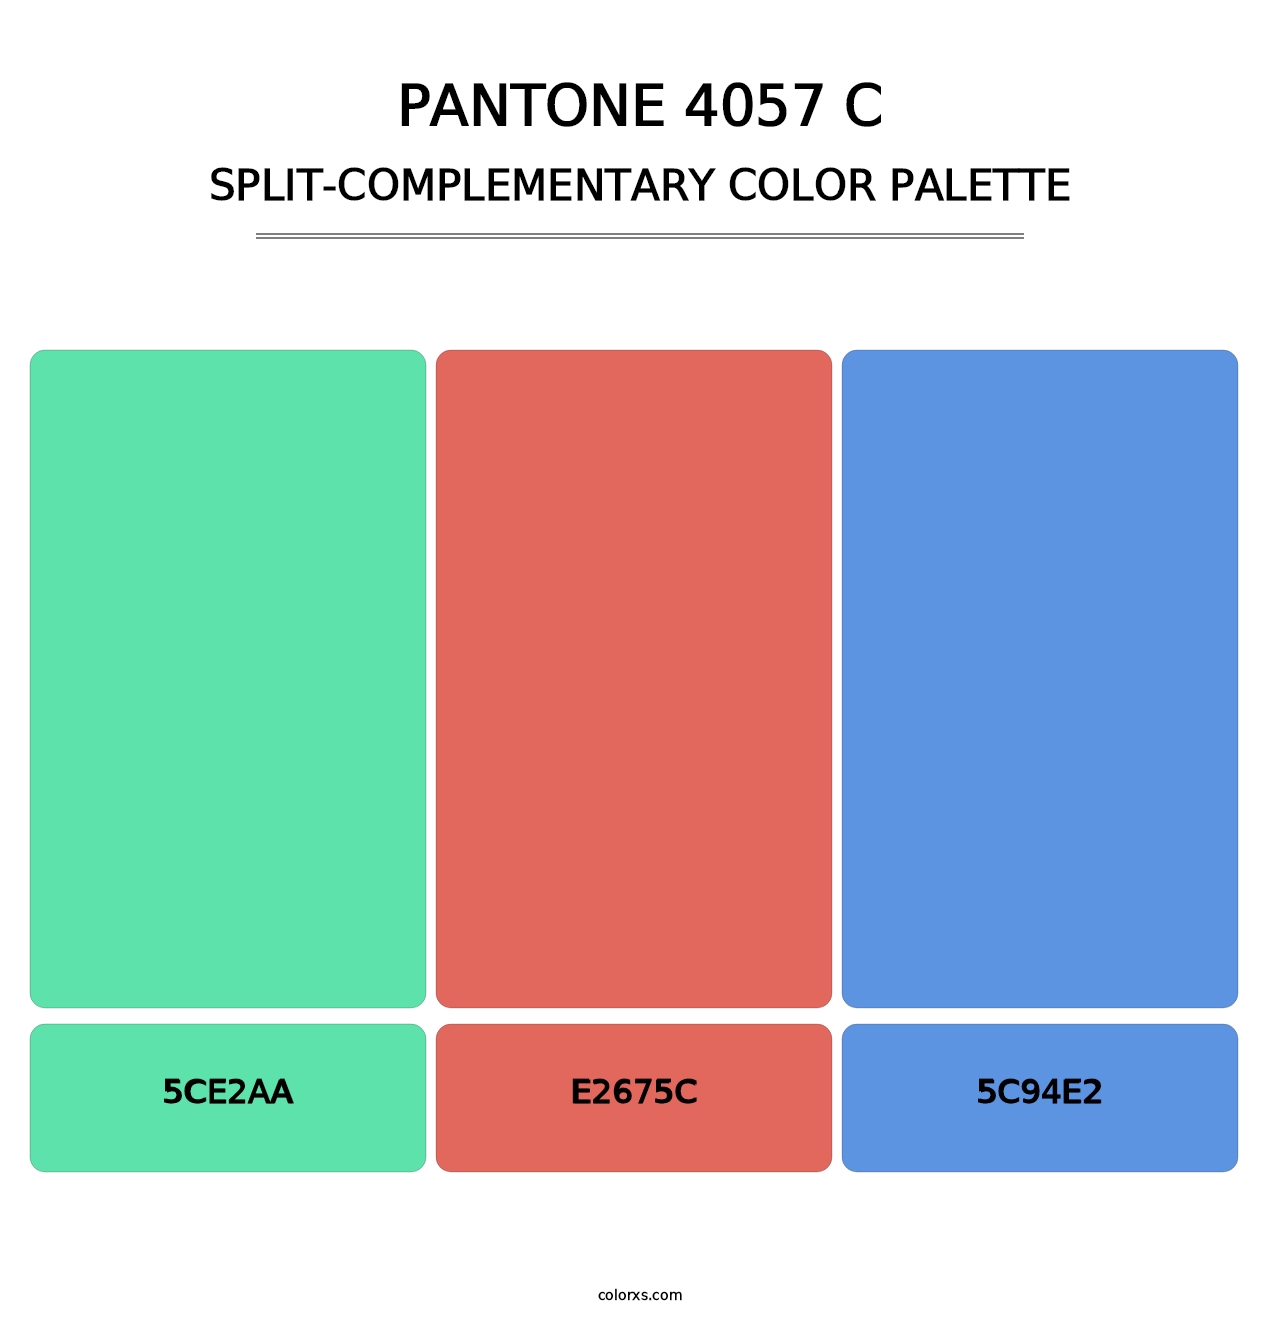 PANTONE 4057 C - Split-Complementary Color Palette